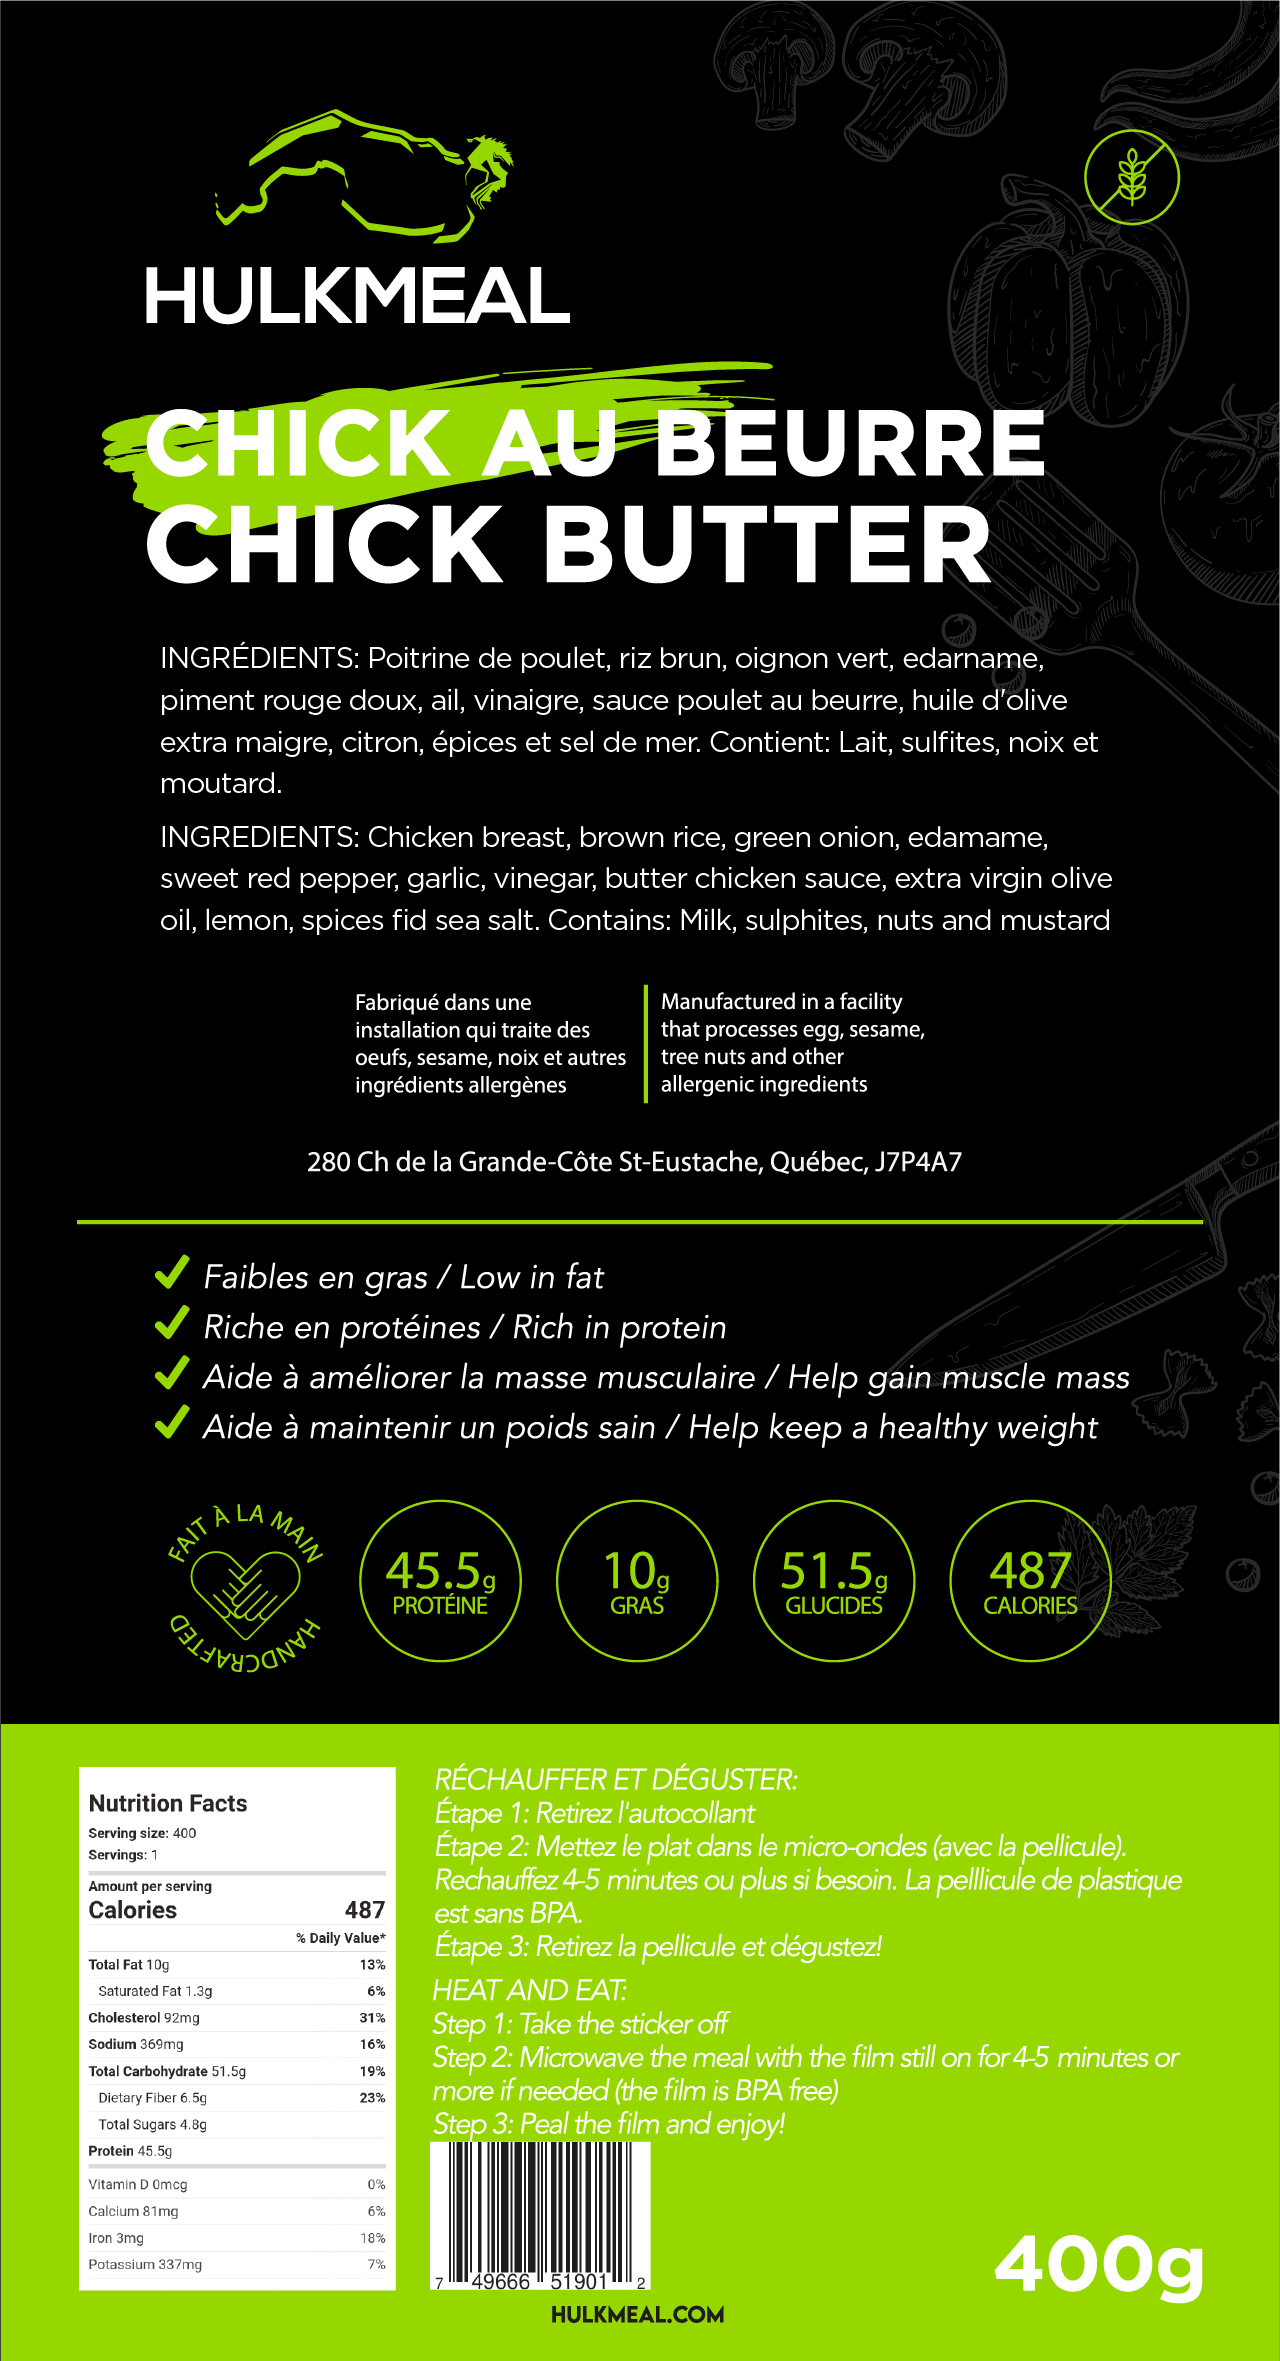 Chick au Beurre - HULKMEAL